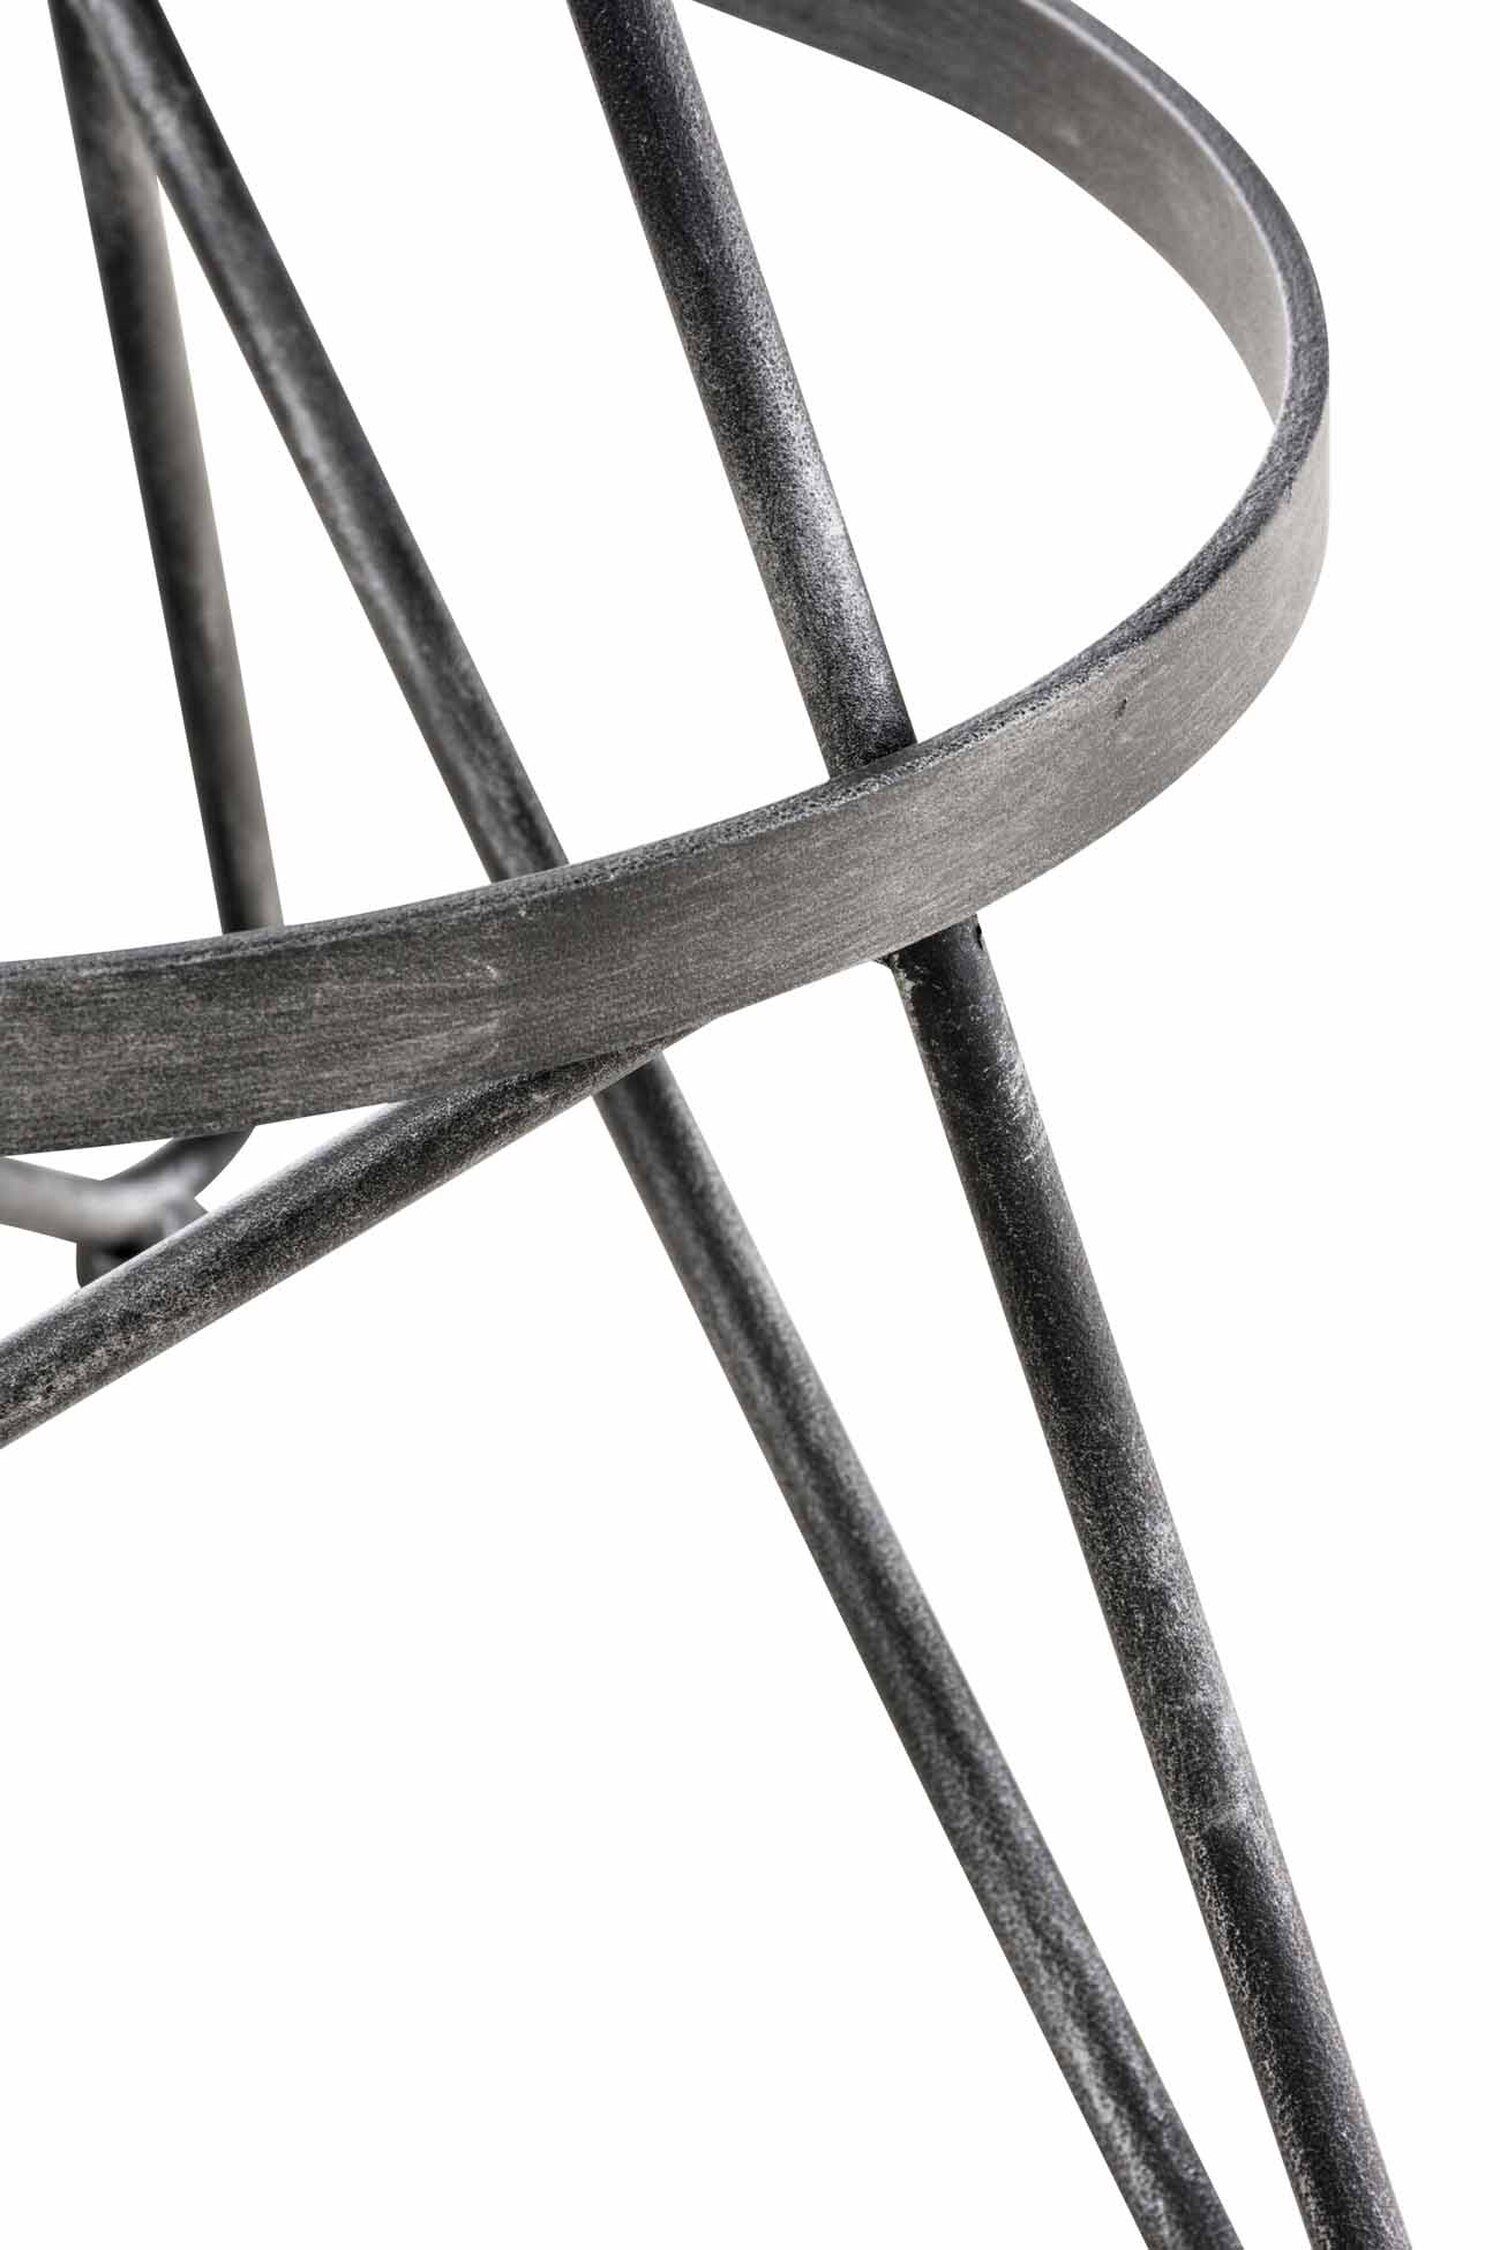 Gestell Kalie & Silber Hocker TPFLiving mit Metall Küche), Sitzfläche: - (Barstuhl angenehmer für Eschenholz Barhocker Fußstütze Theke